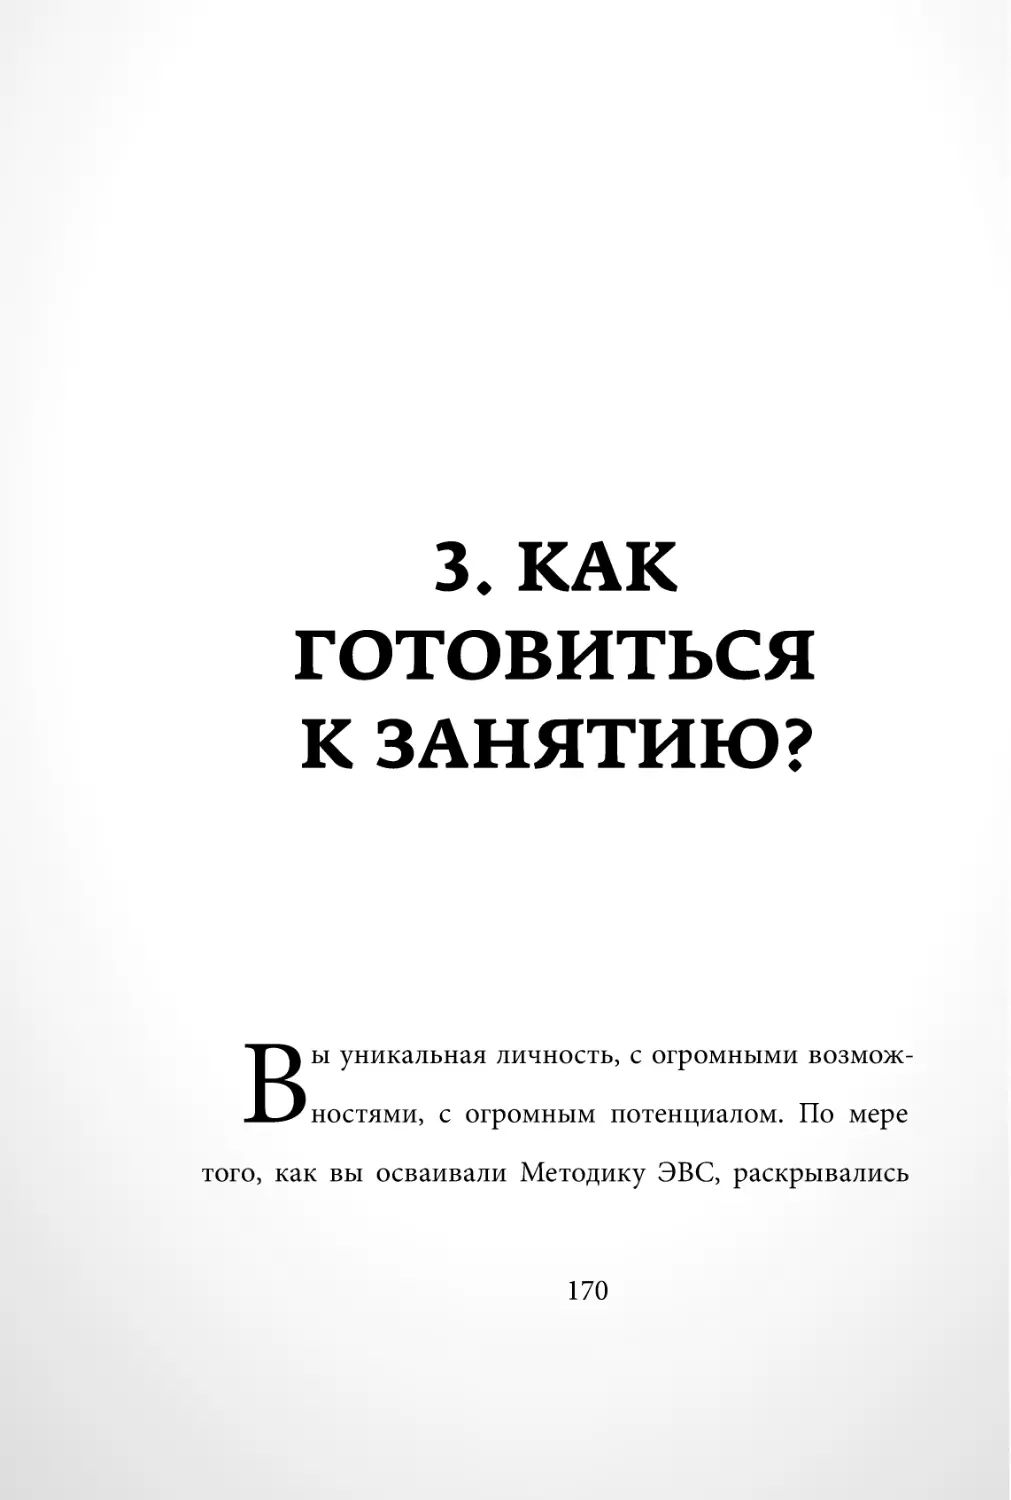 Sergey_Filippov_Dnevnik_samorazvitia_Evolyutsia_Vnutrennego_Sostoyania_170.pdf (p.170)